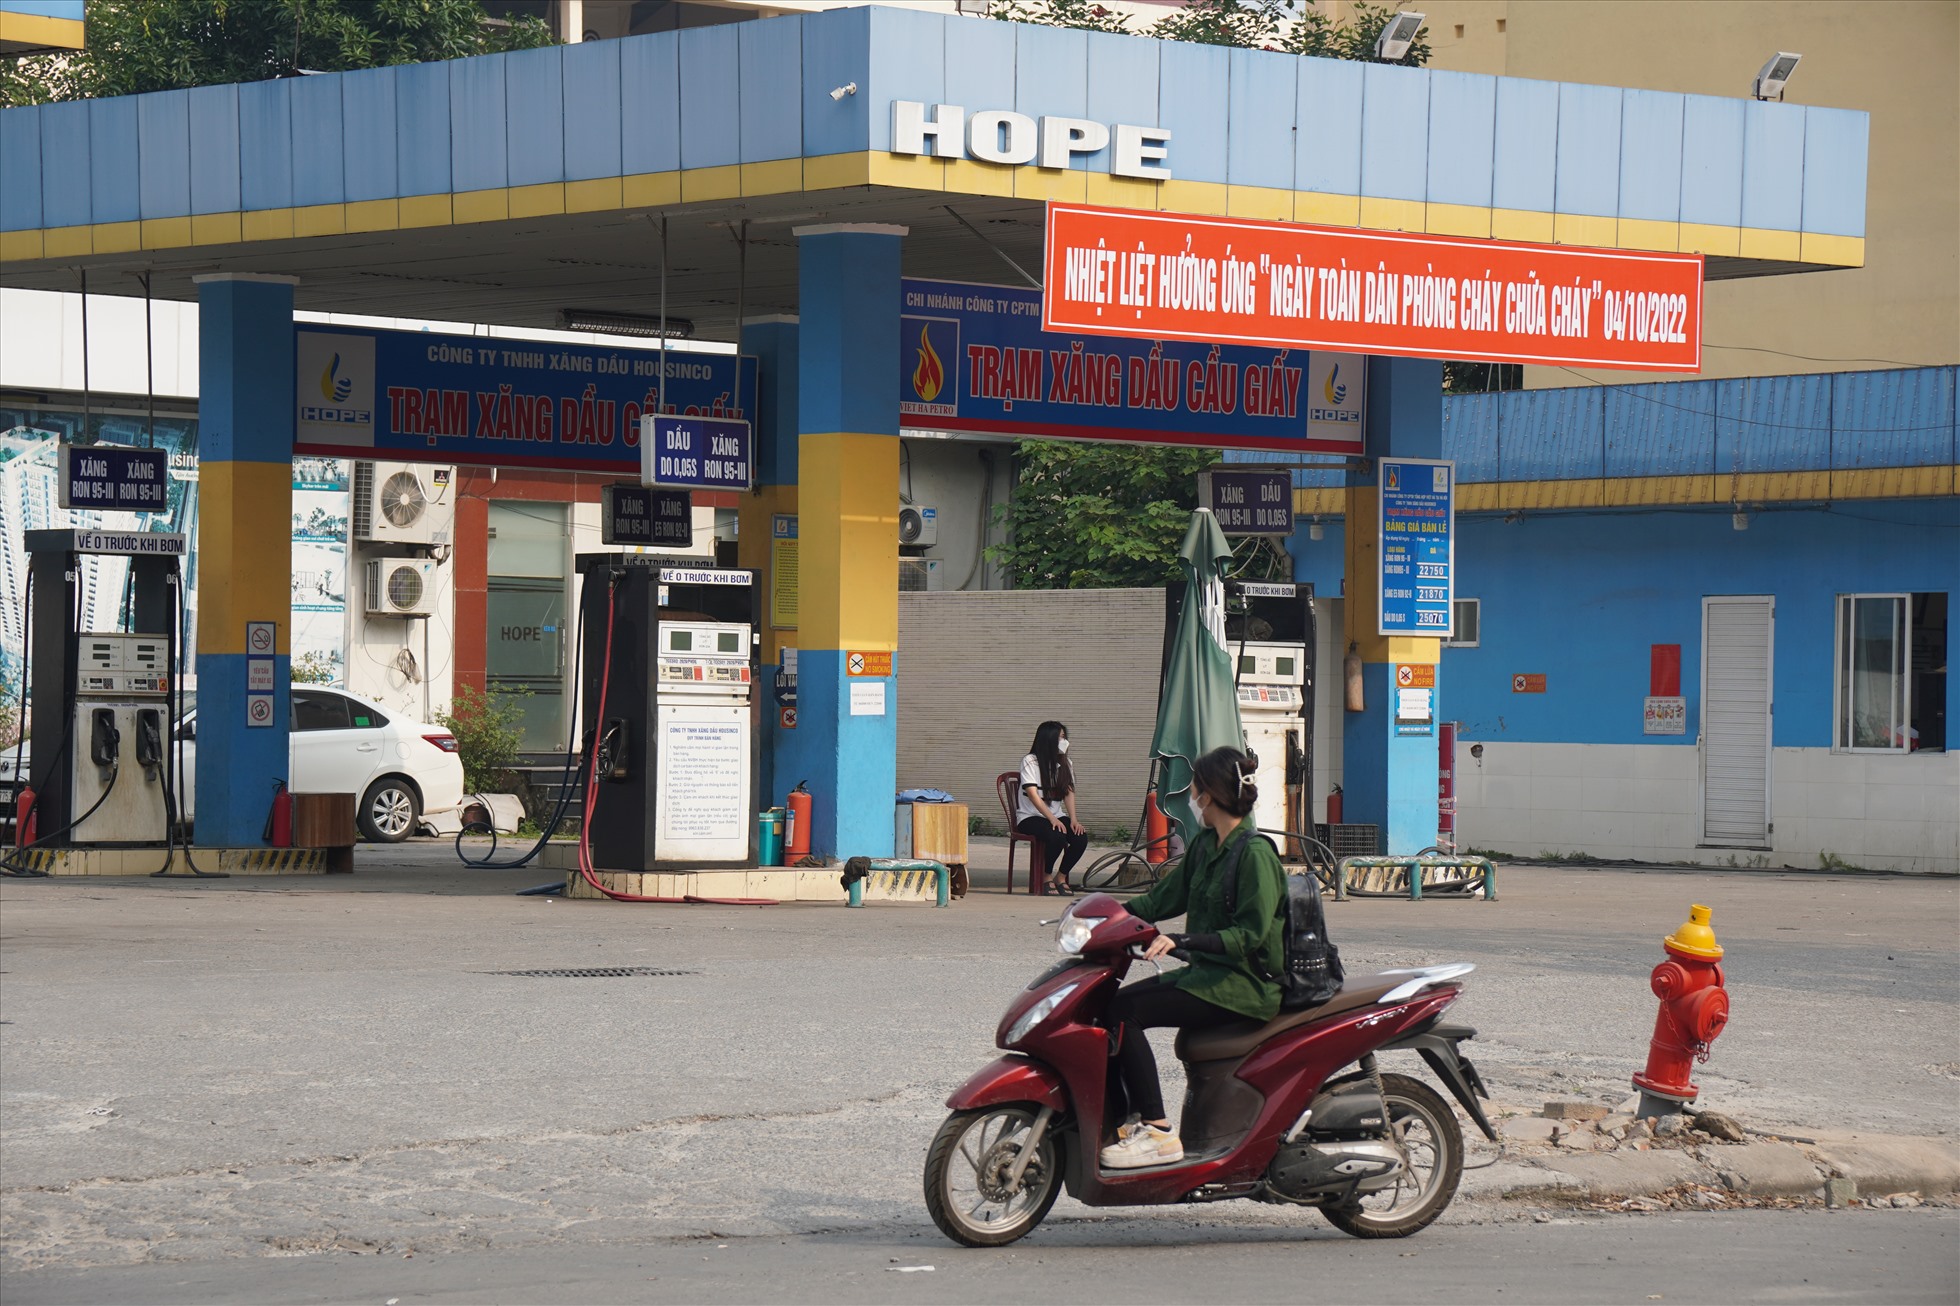 Tại cây xăng ở số 69/10X Phạm Văn Chiêu phường 14, quận Gò Vấp, dù chưa tới 9h sáng nhưng phía trước cửa hàng đã đặt biển thông báo hết xăng, khiến người dân khi dắt xe đến nơi cũng không mua được hàng.